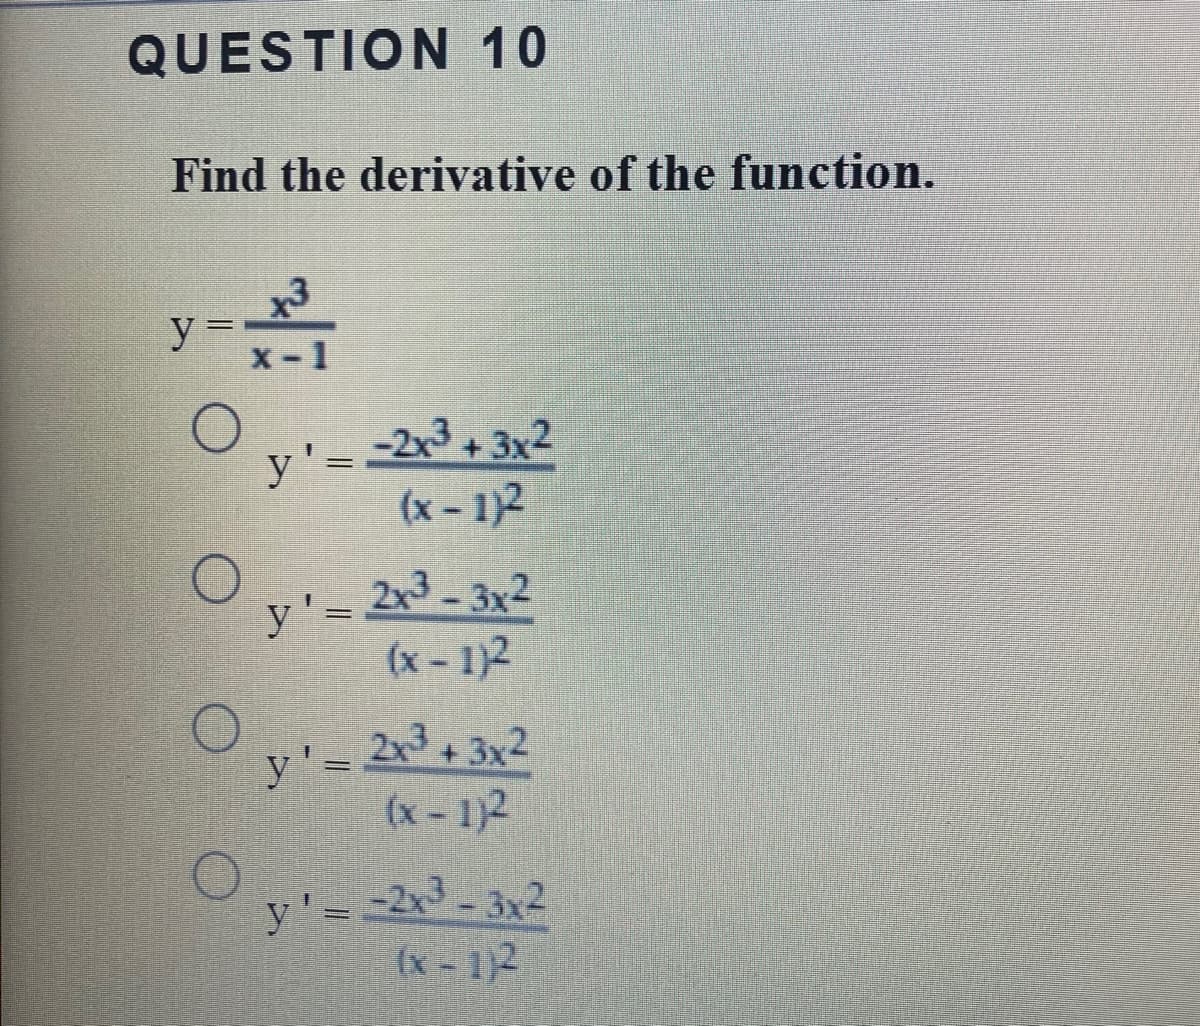 y' 2x-3x-
QUESTION 10
Find the derivative of the function.
y =
-2x3+3x2
(x- 1)2
y'= 23- 3x2
(x- 1)2
y'= 23+3x2
(x-1)2
(x-1)2
